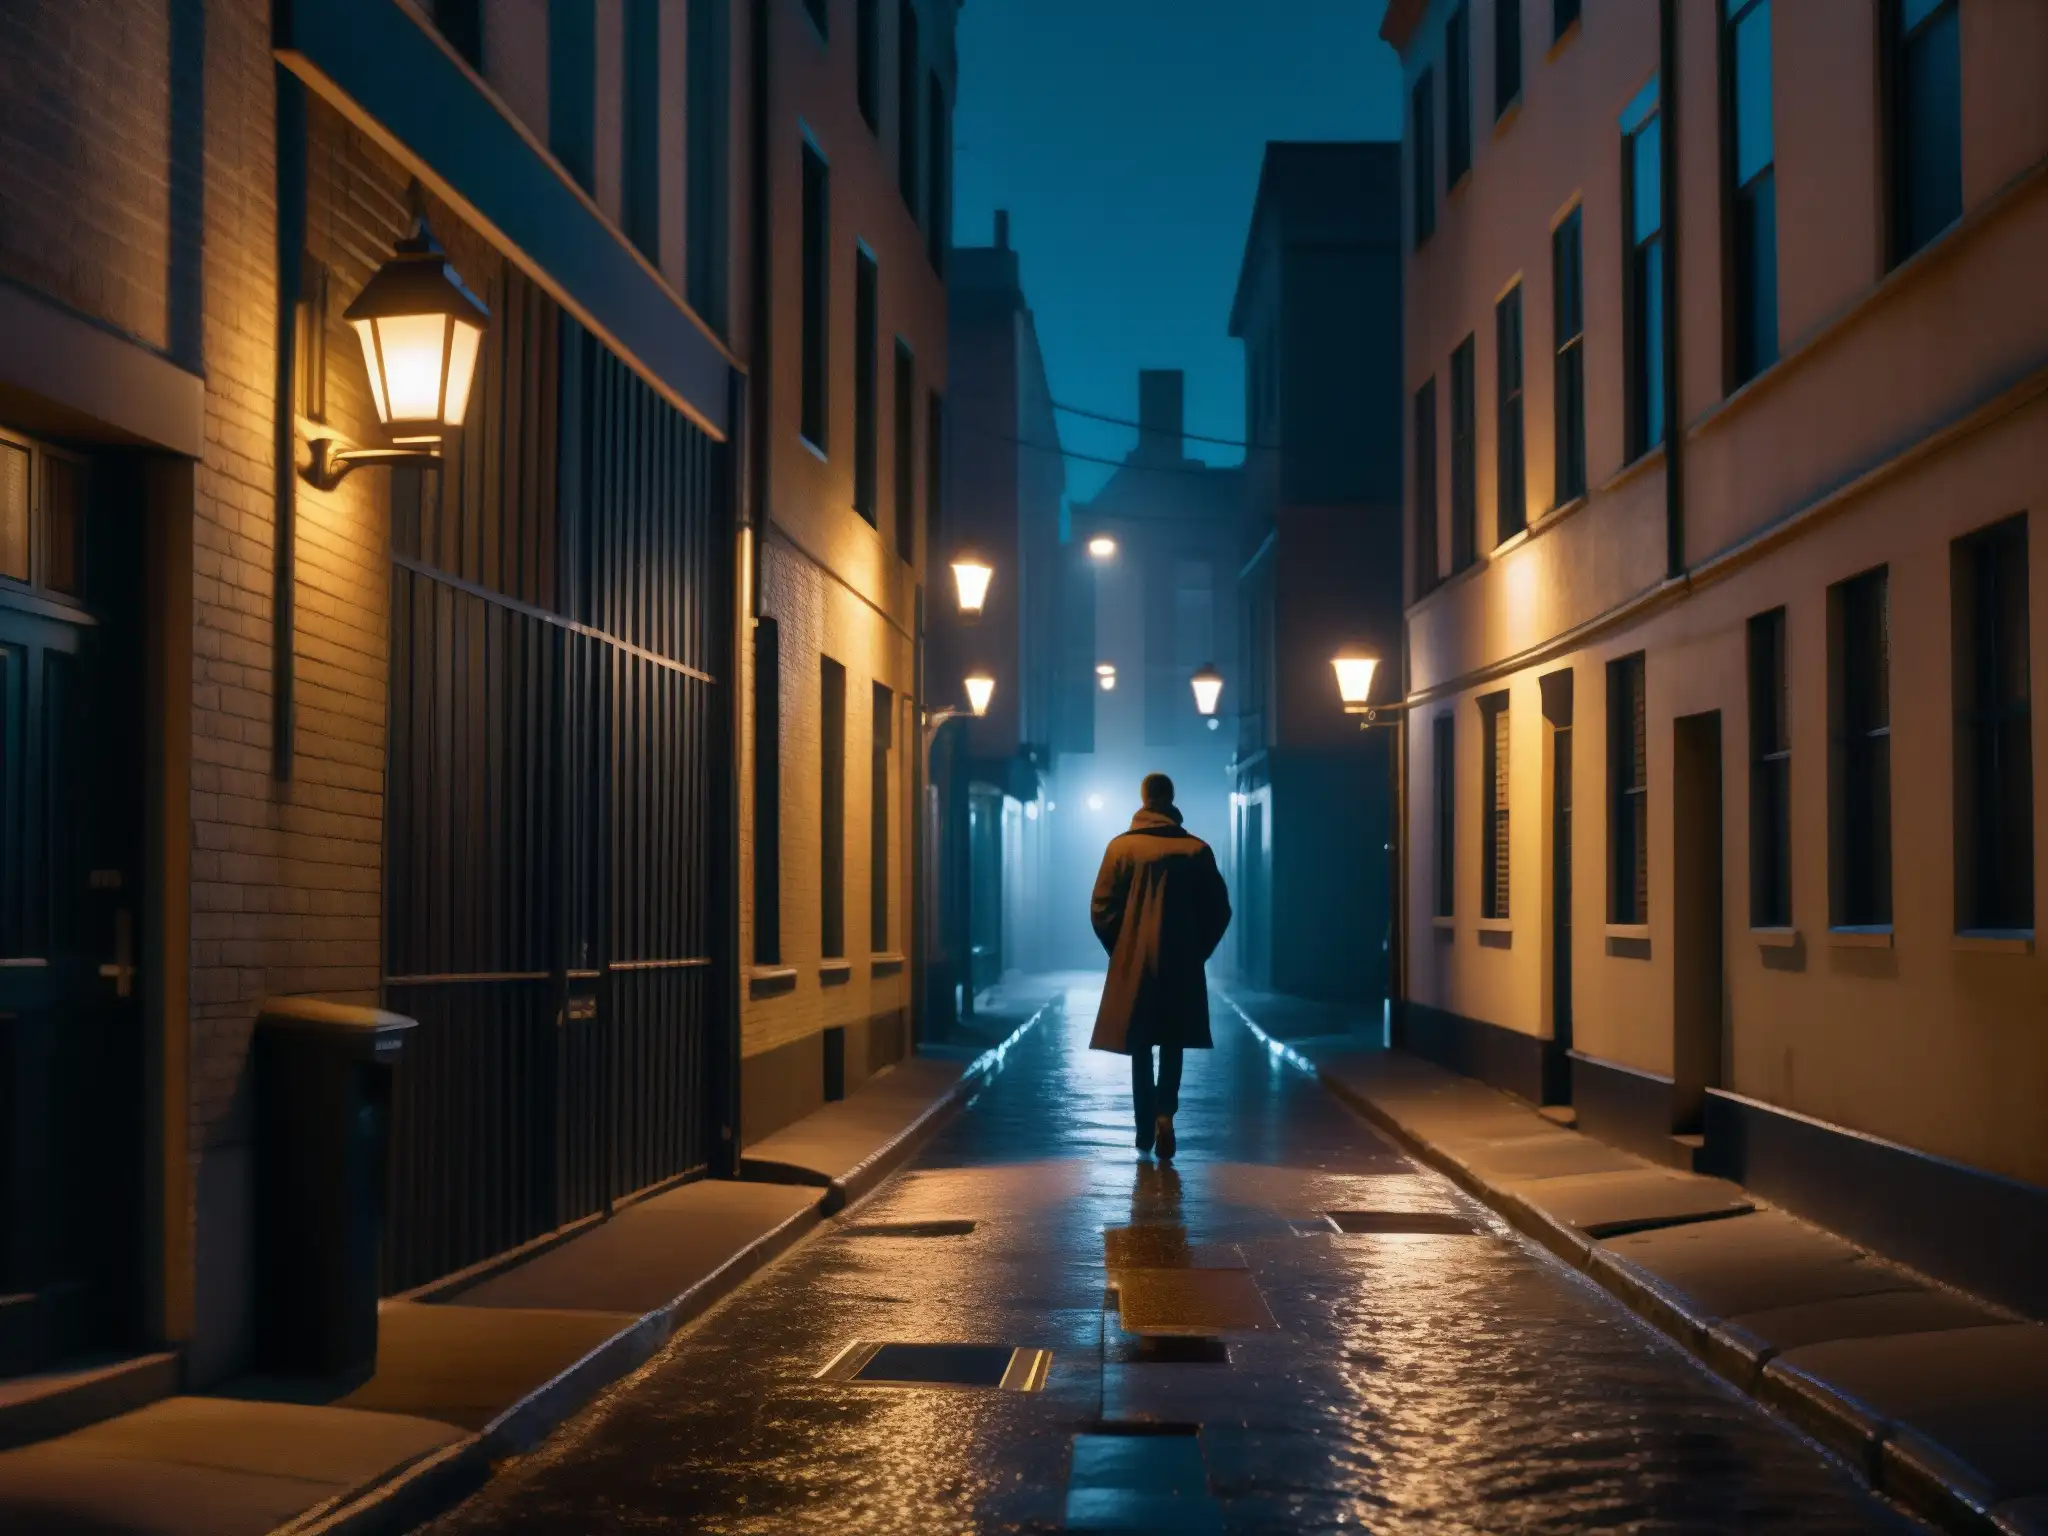 Un callejón urbano oscuro de noche con una figura solitaria caminando en la distancia, rodeado de luces parpadeantes y sombras